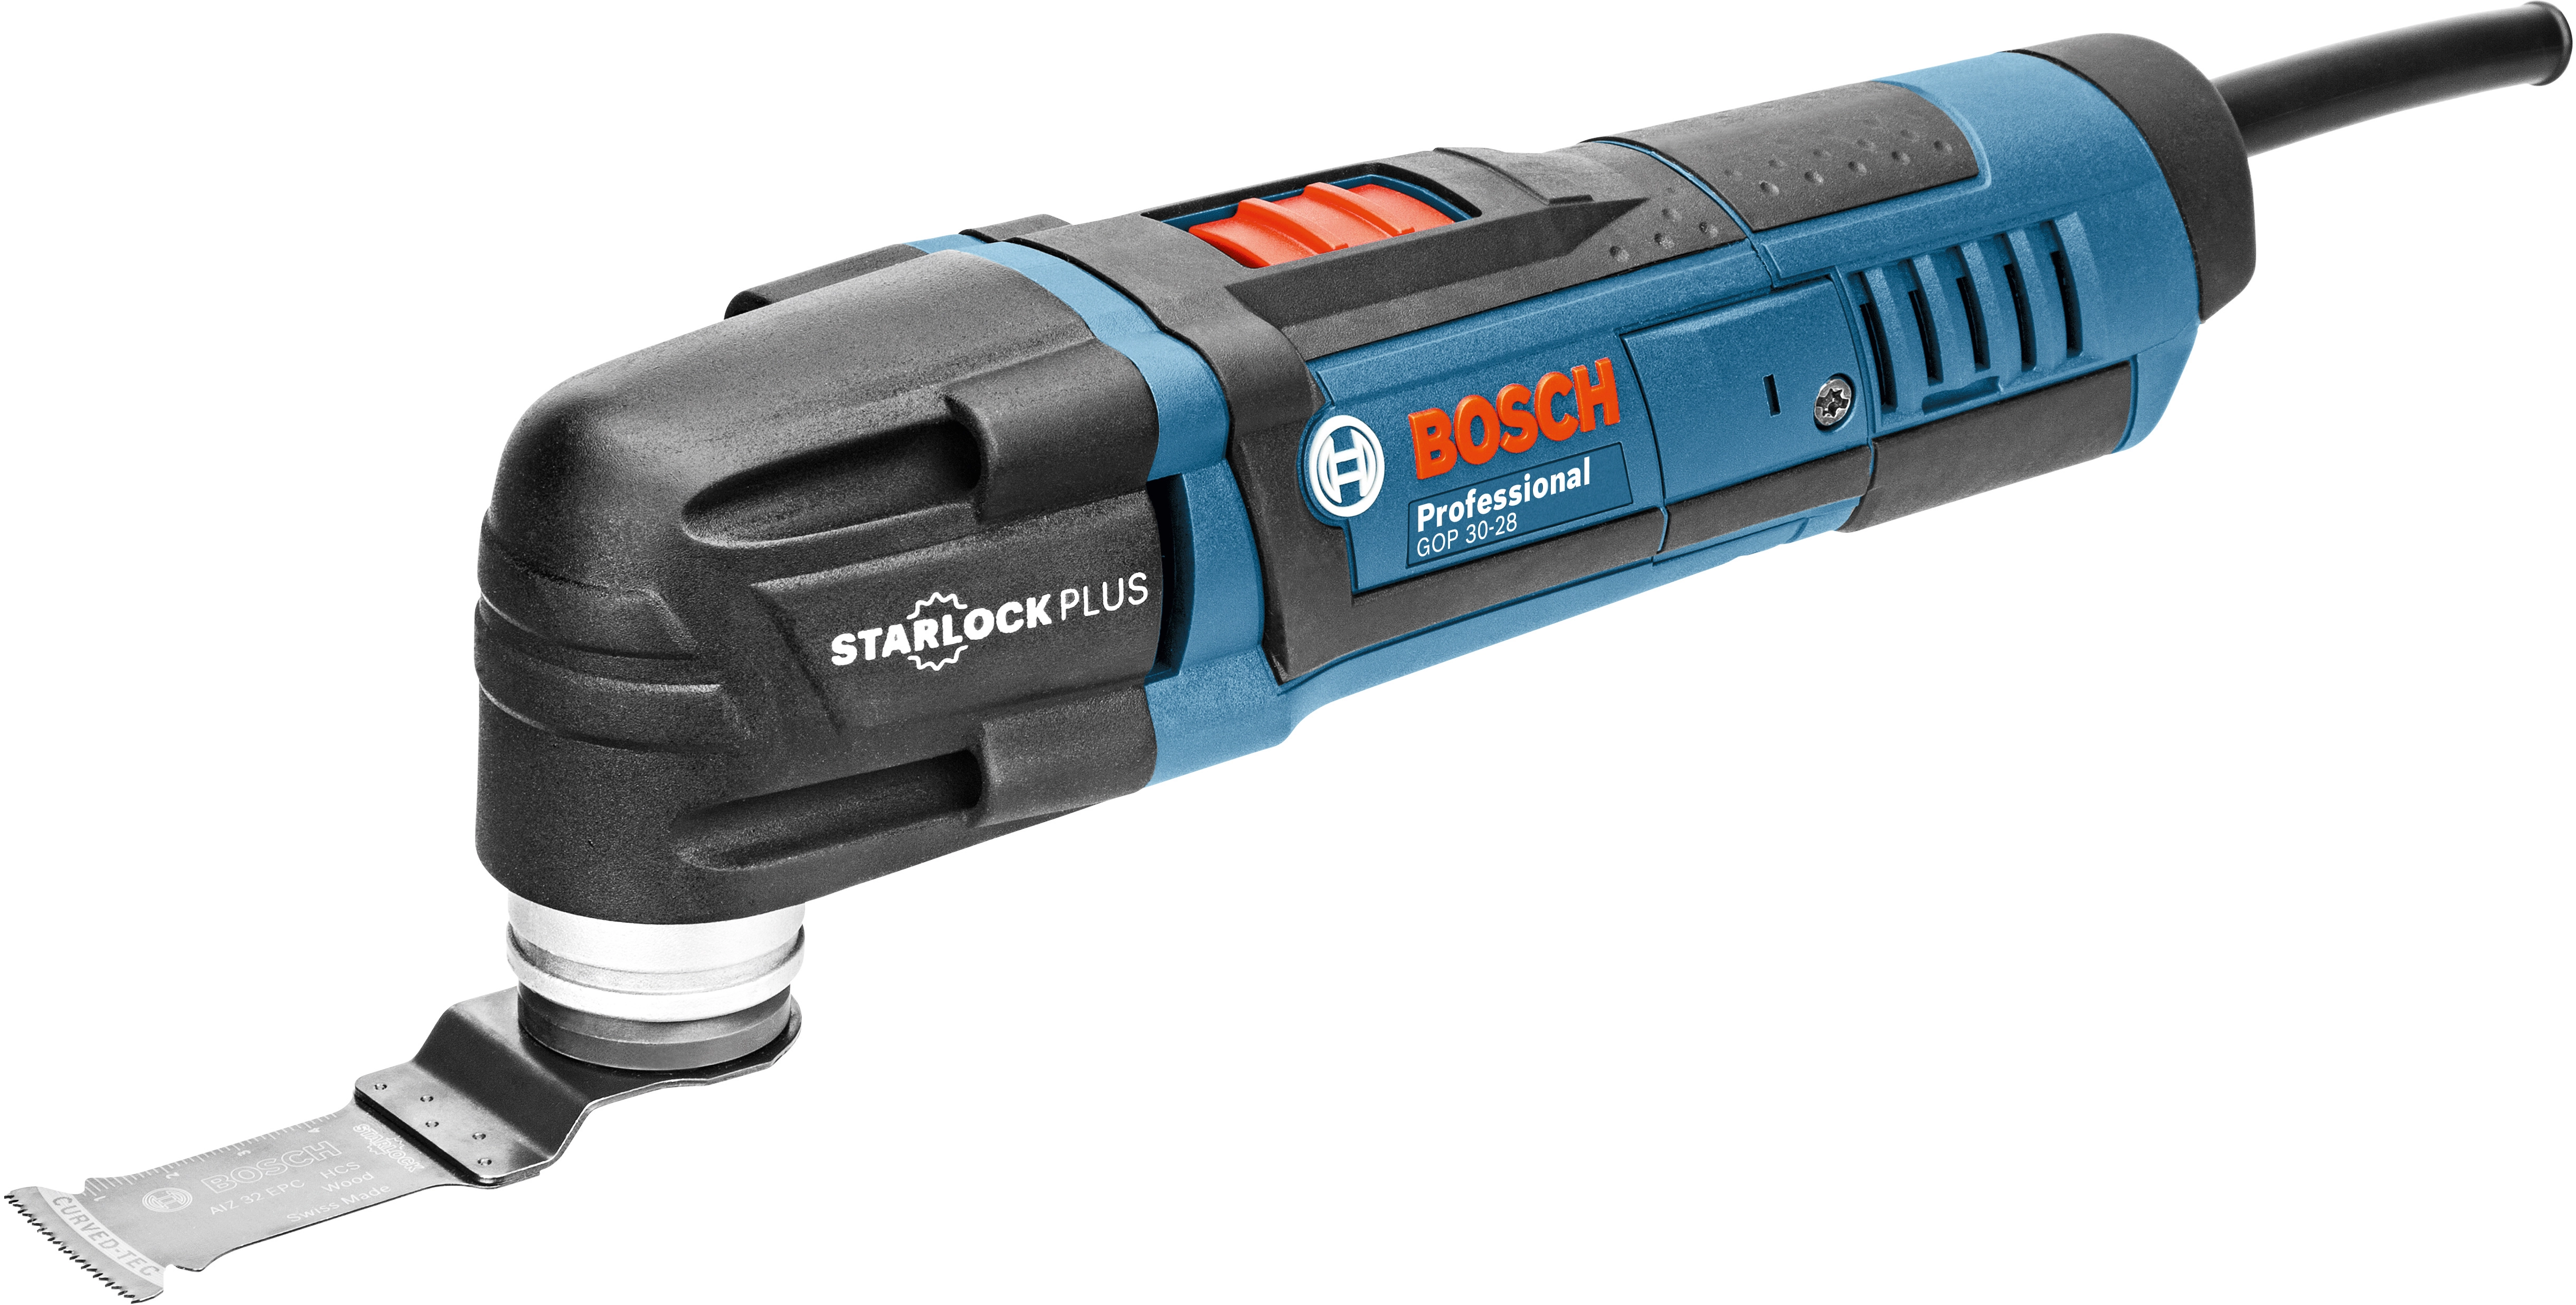 300 30-28 Bosch W GOP Professional Multi-Cutter